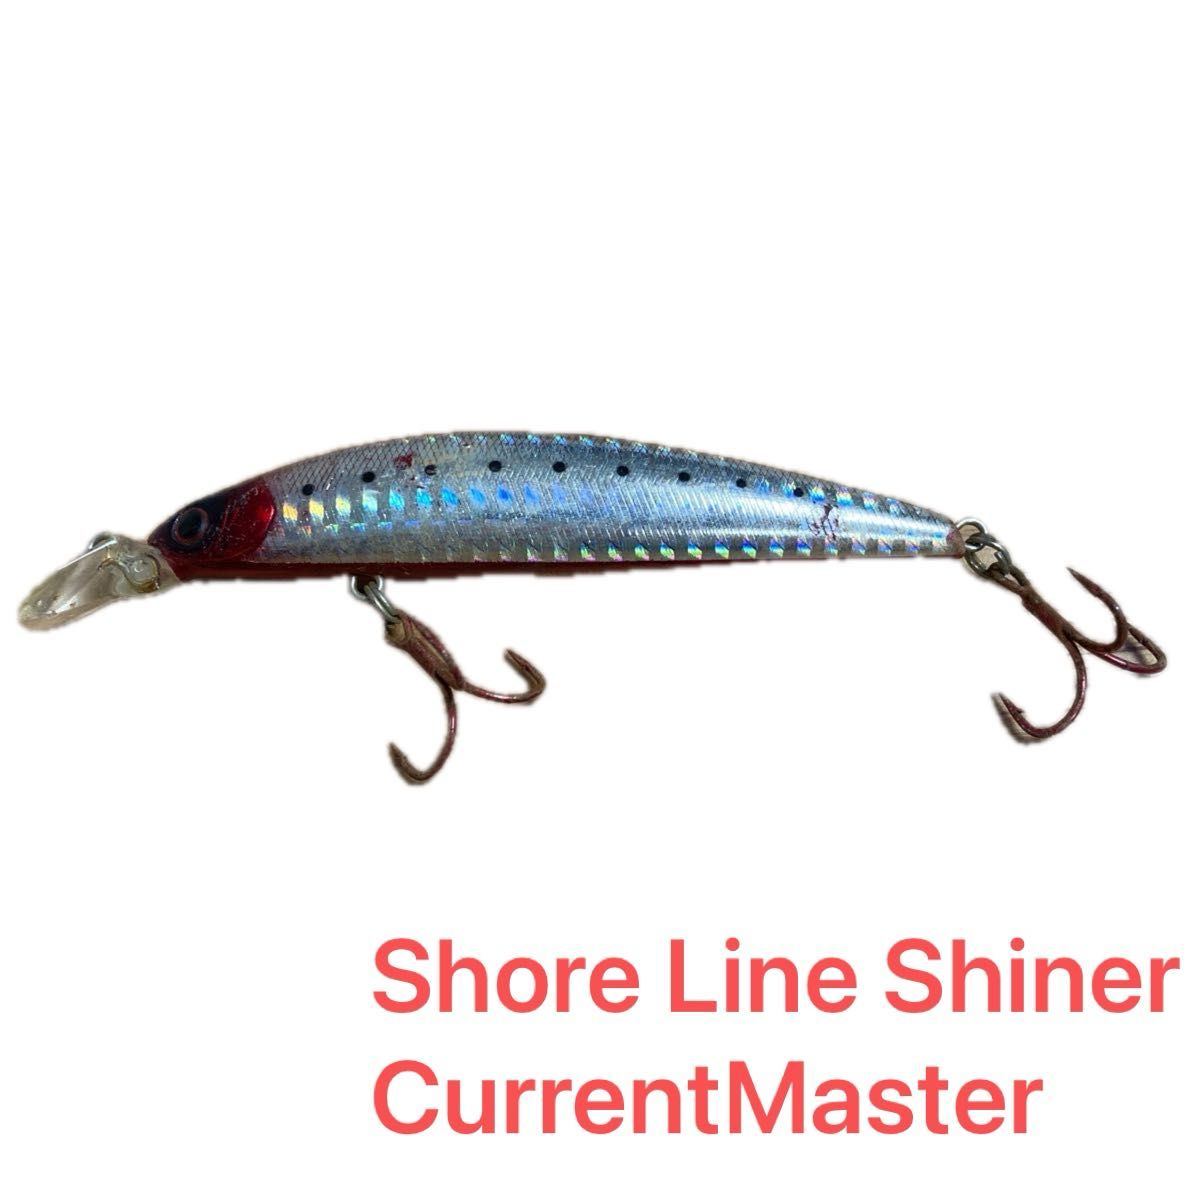 ダイワ ショアラインシャイナー カレントマスター S-G Shore Line Shiner CurrentMaster